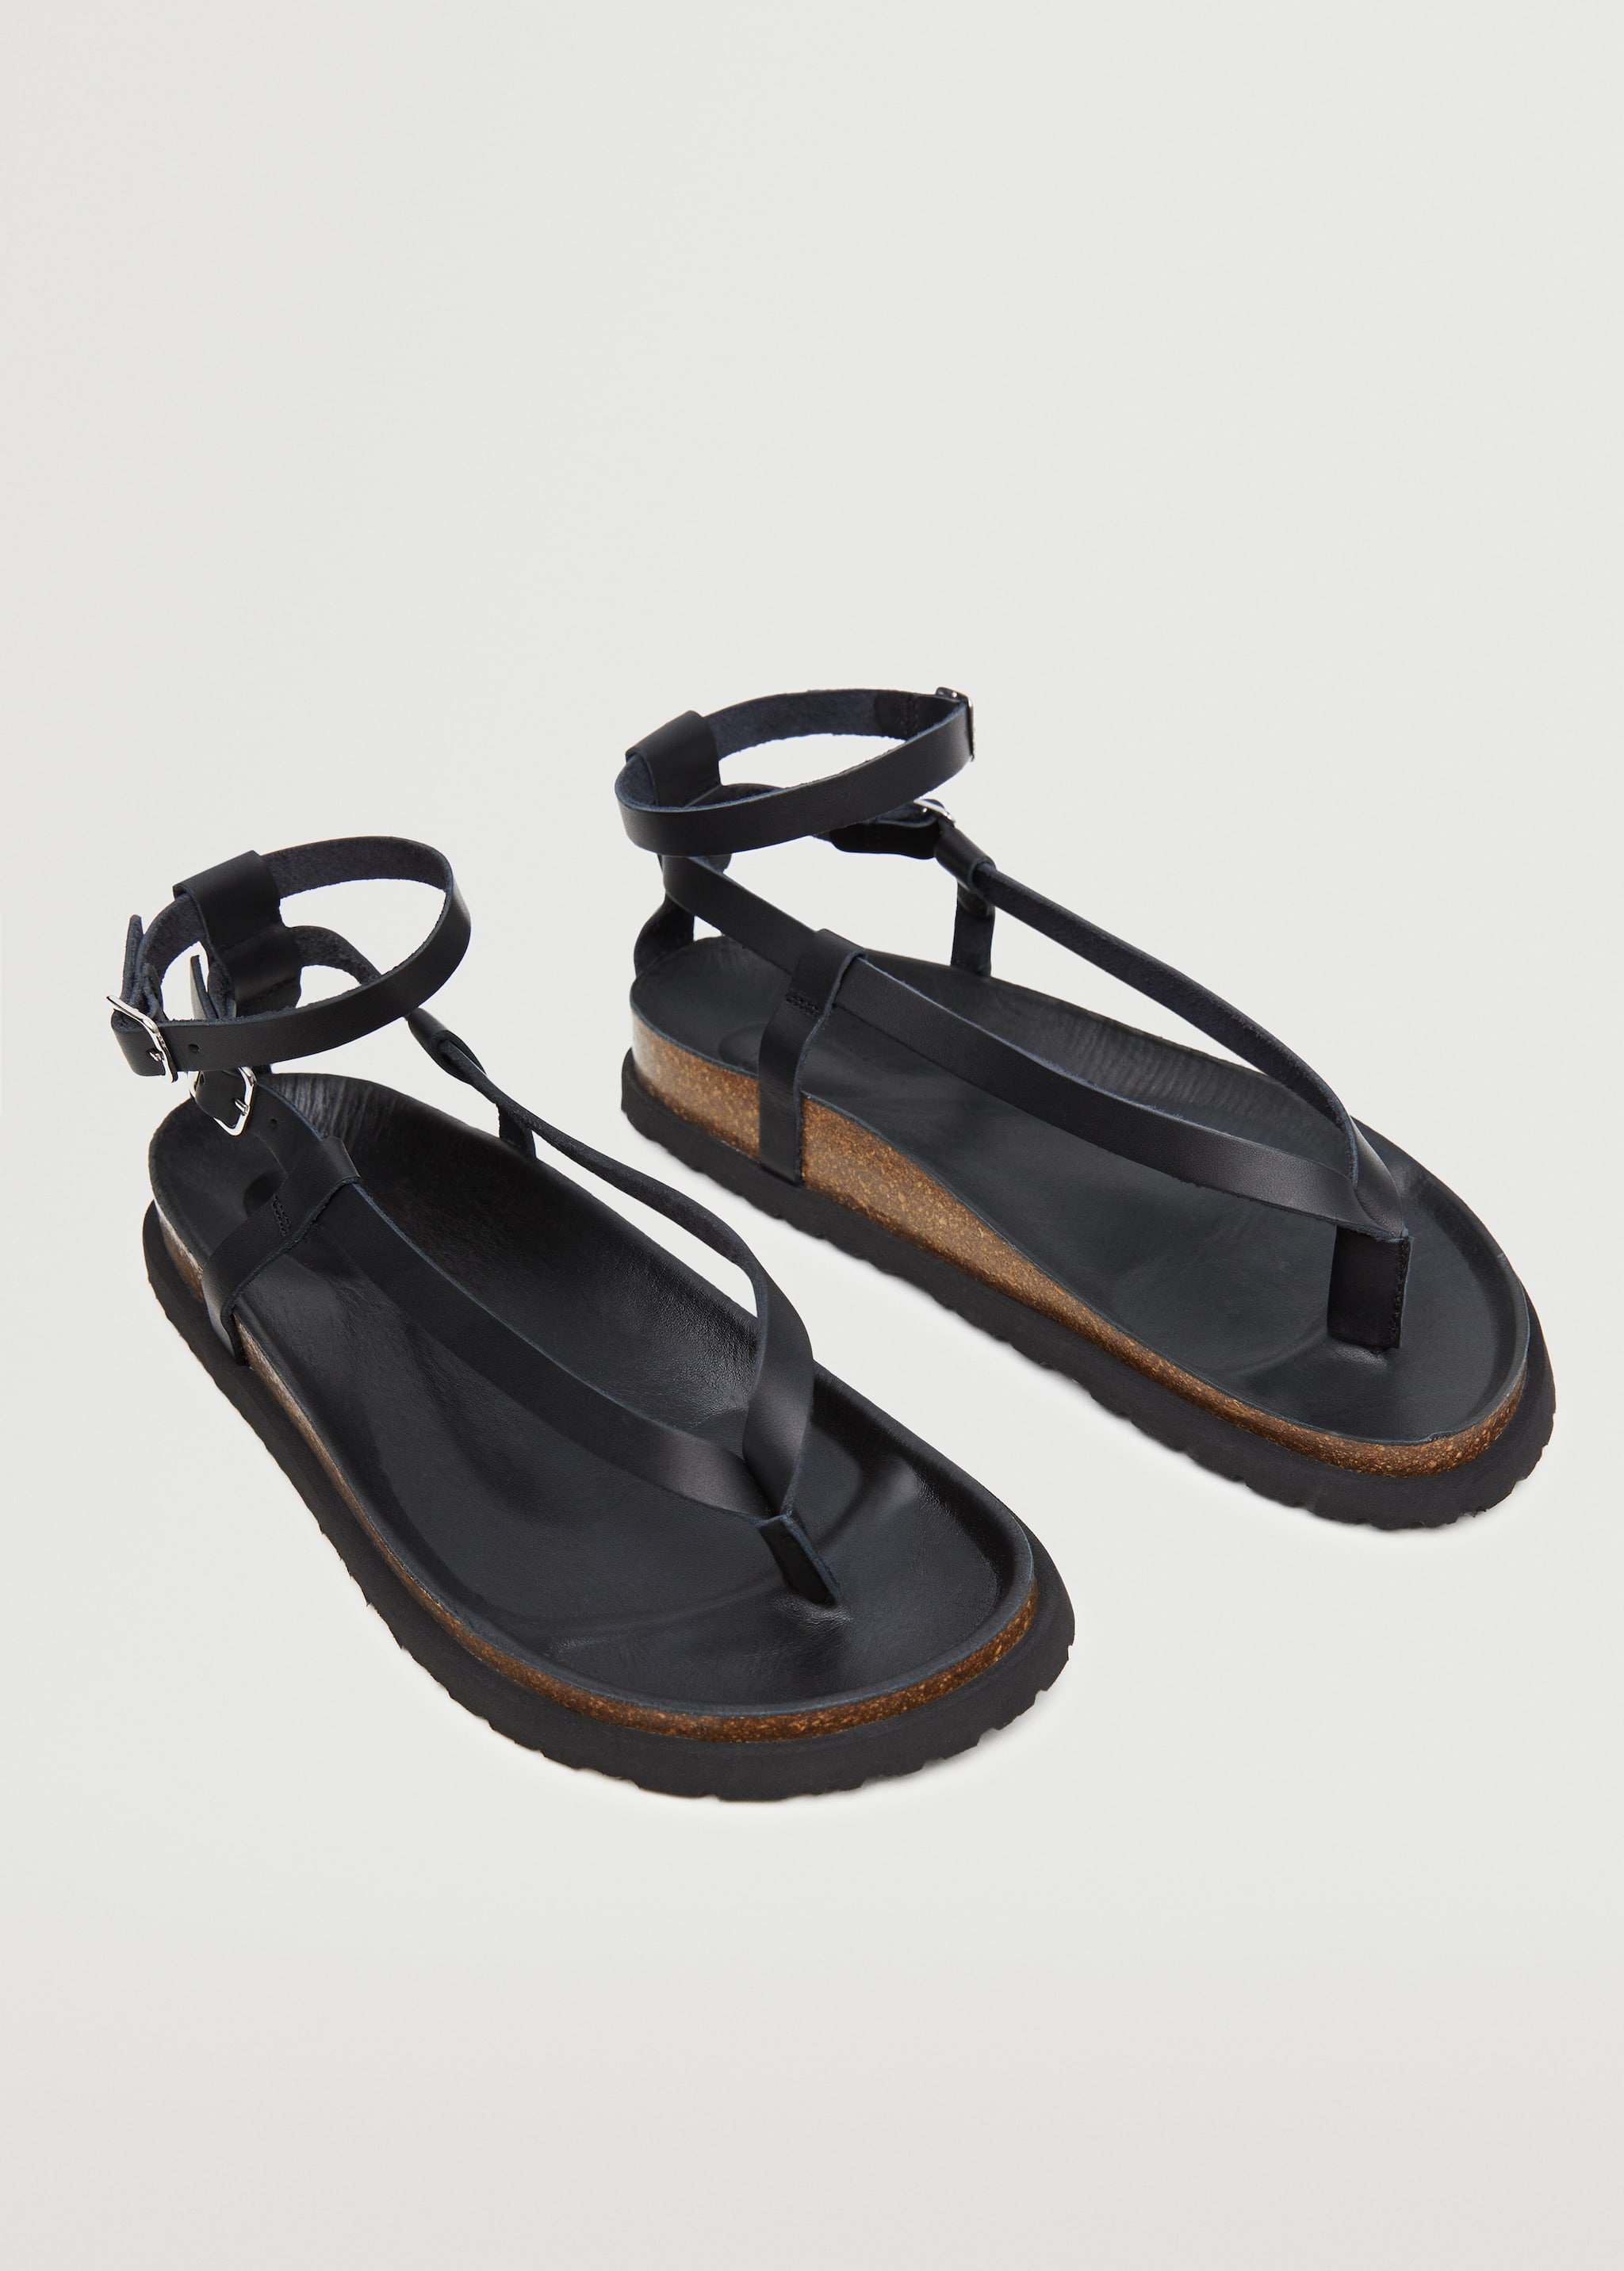 Leather straps sandals - Medium plane